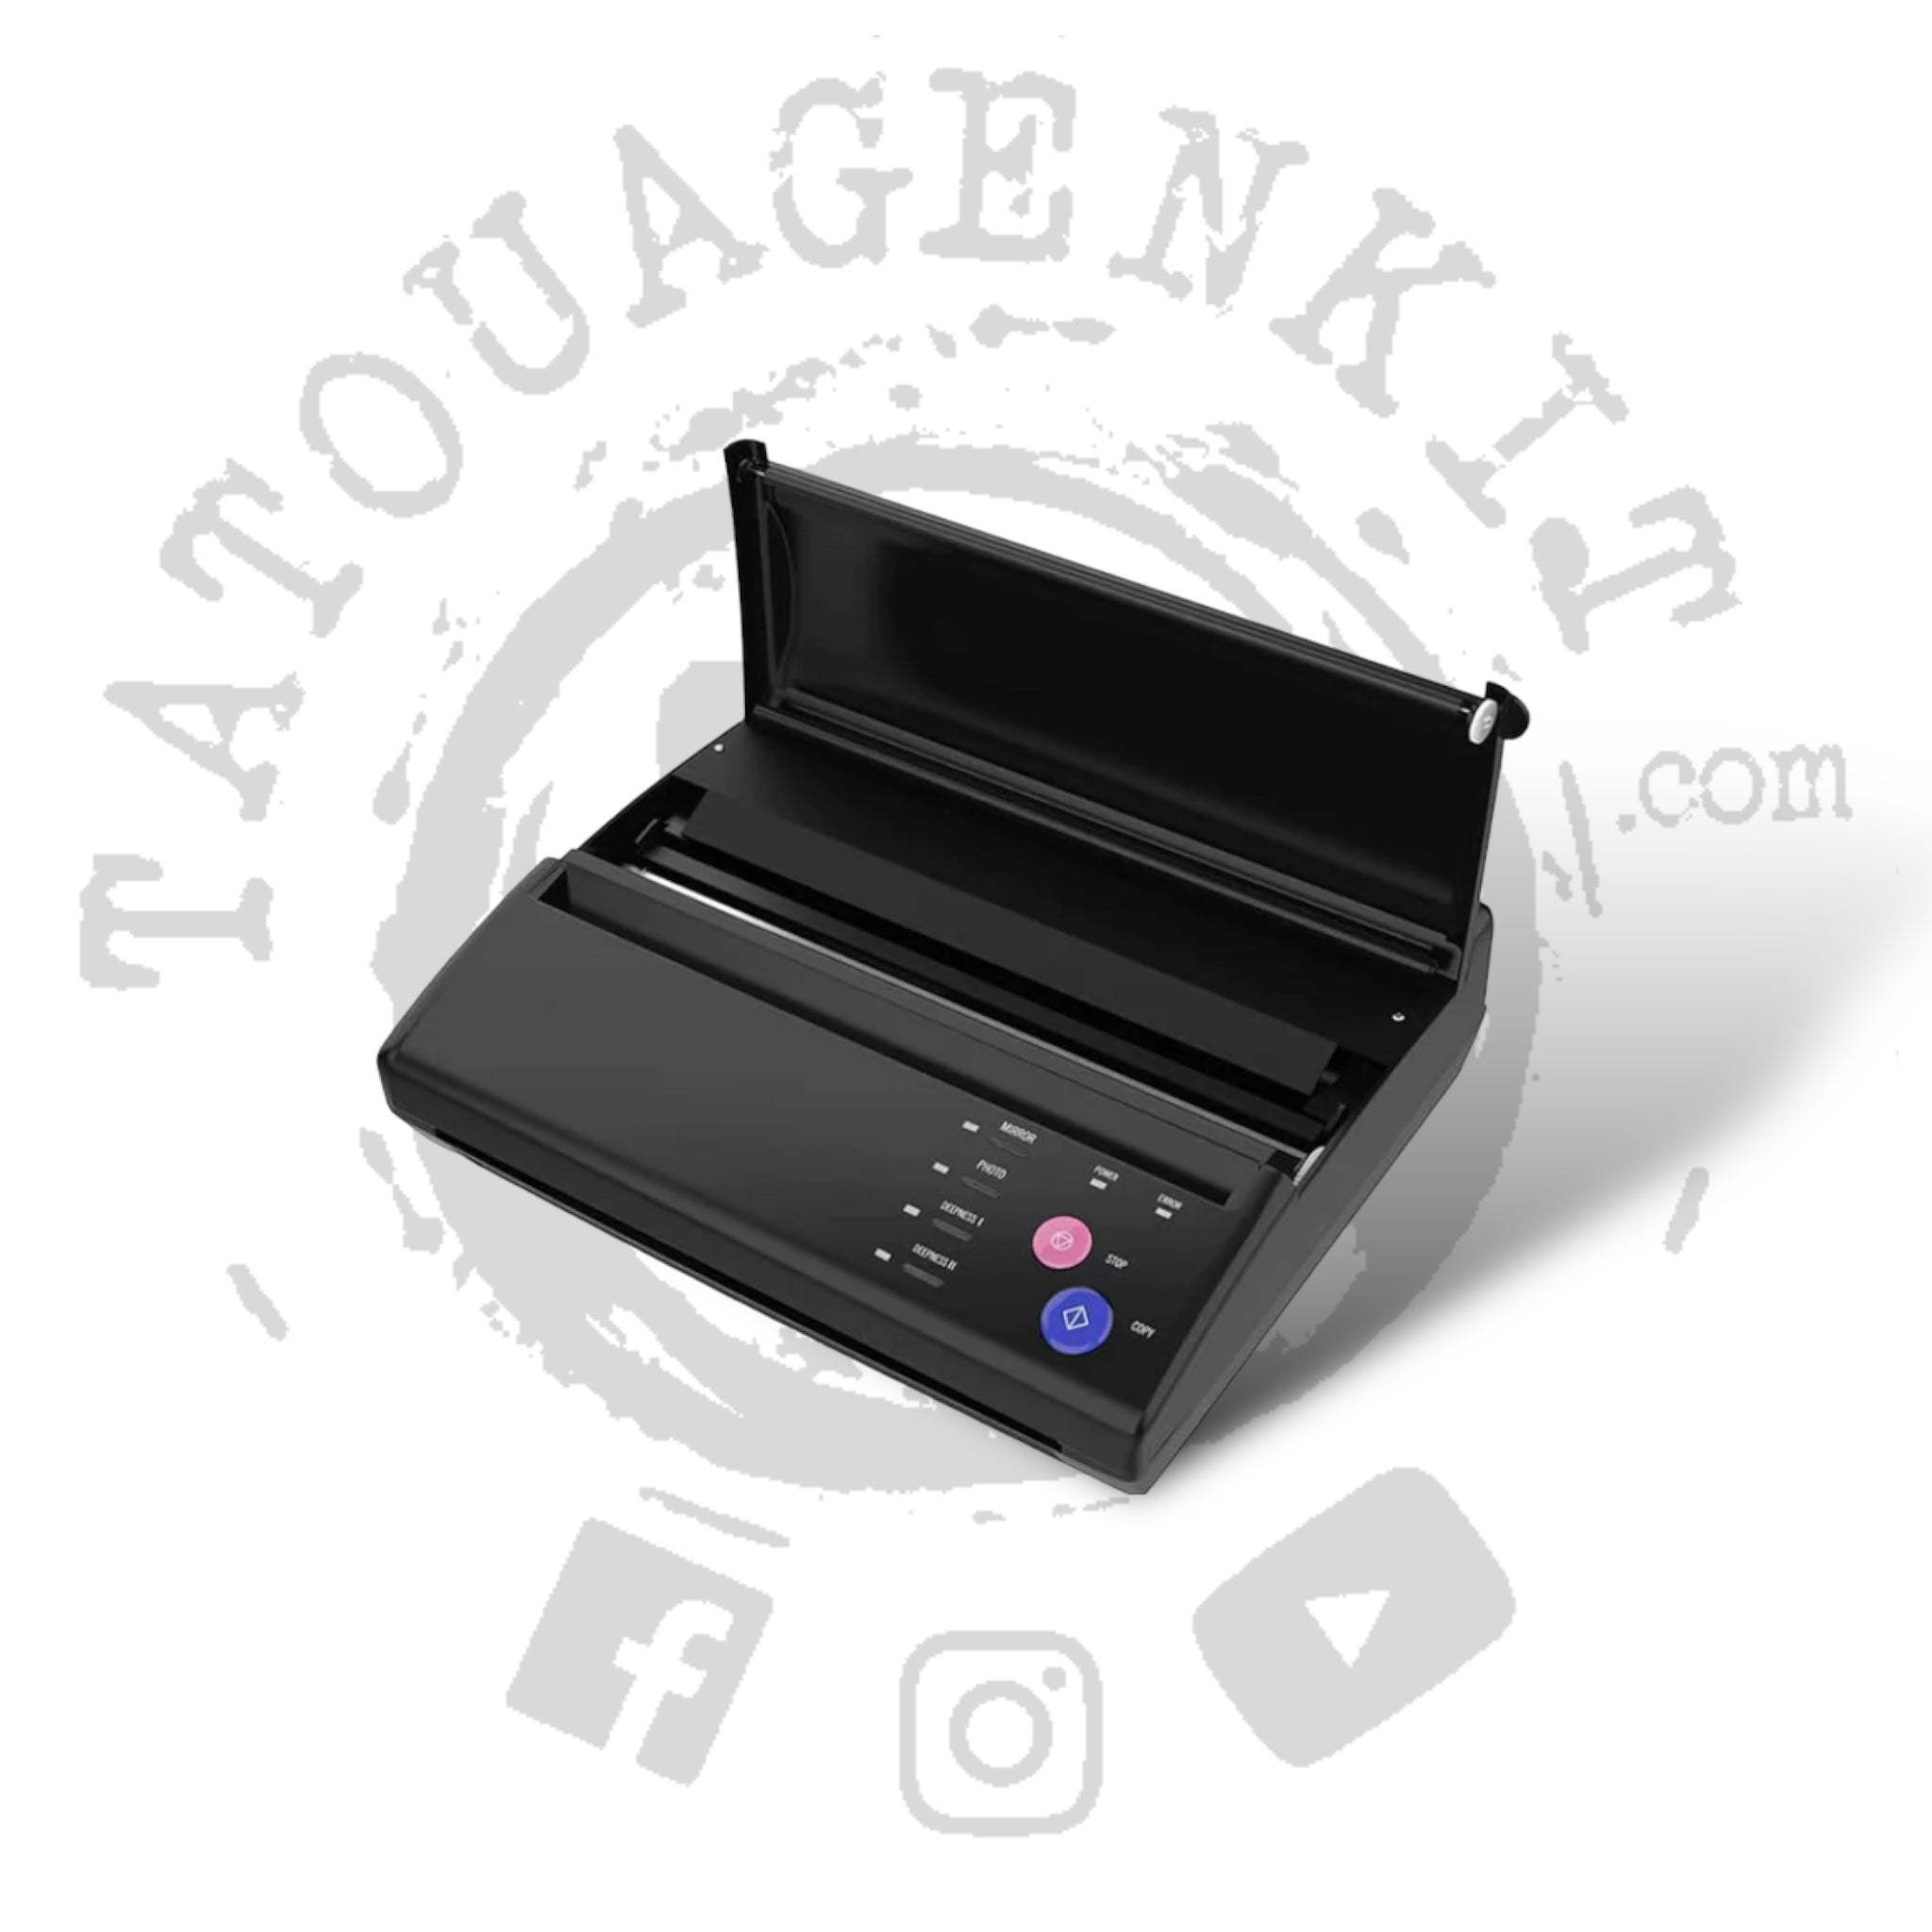 Thermocopieur de qualité pour transfert de tatouage et réalistation de  Stencil - Paiement en 3X